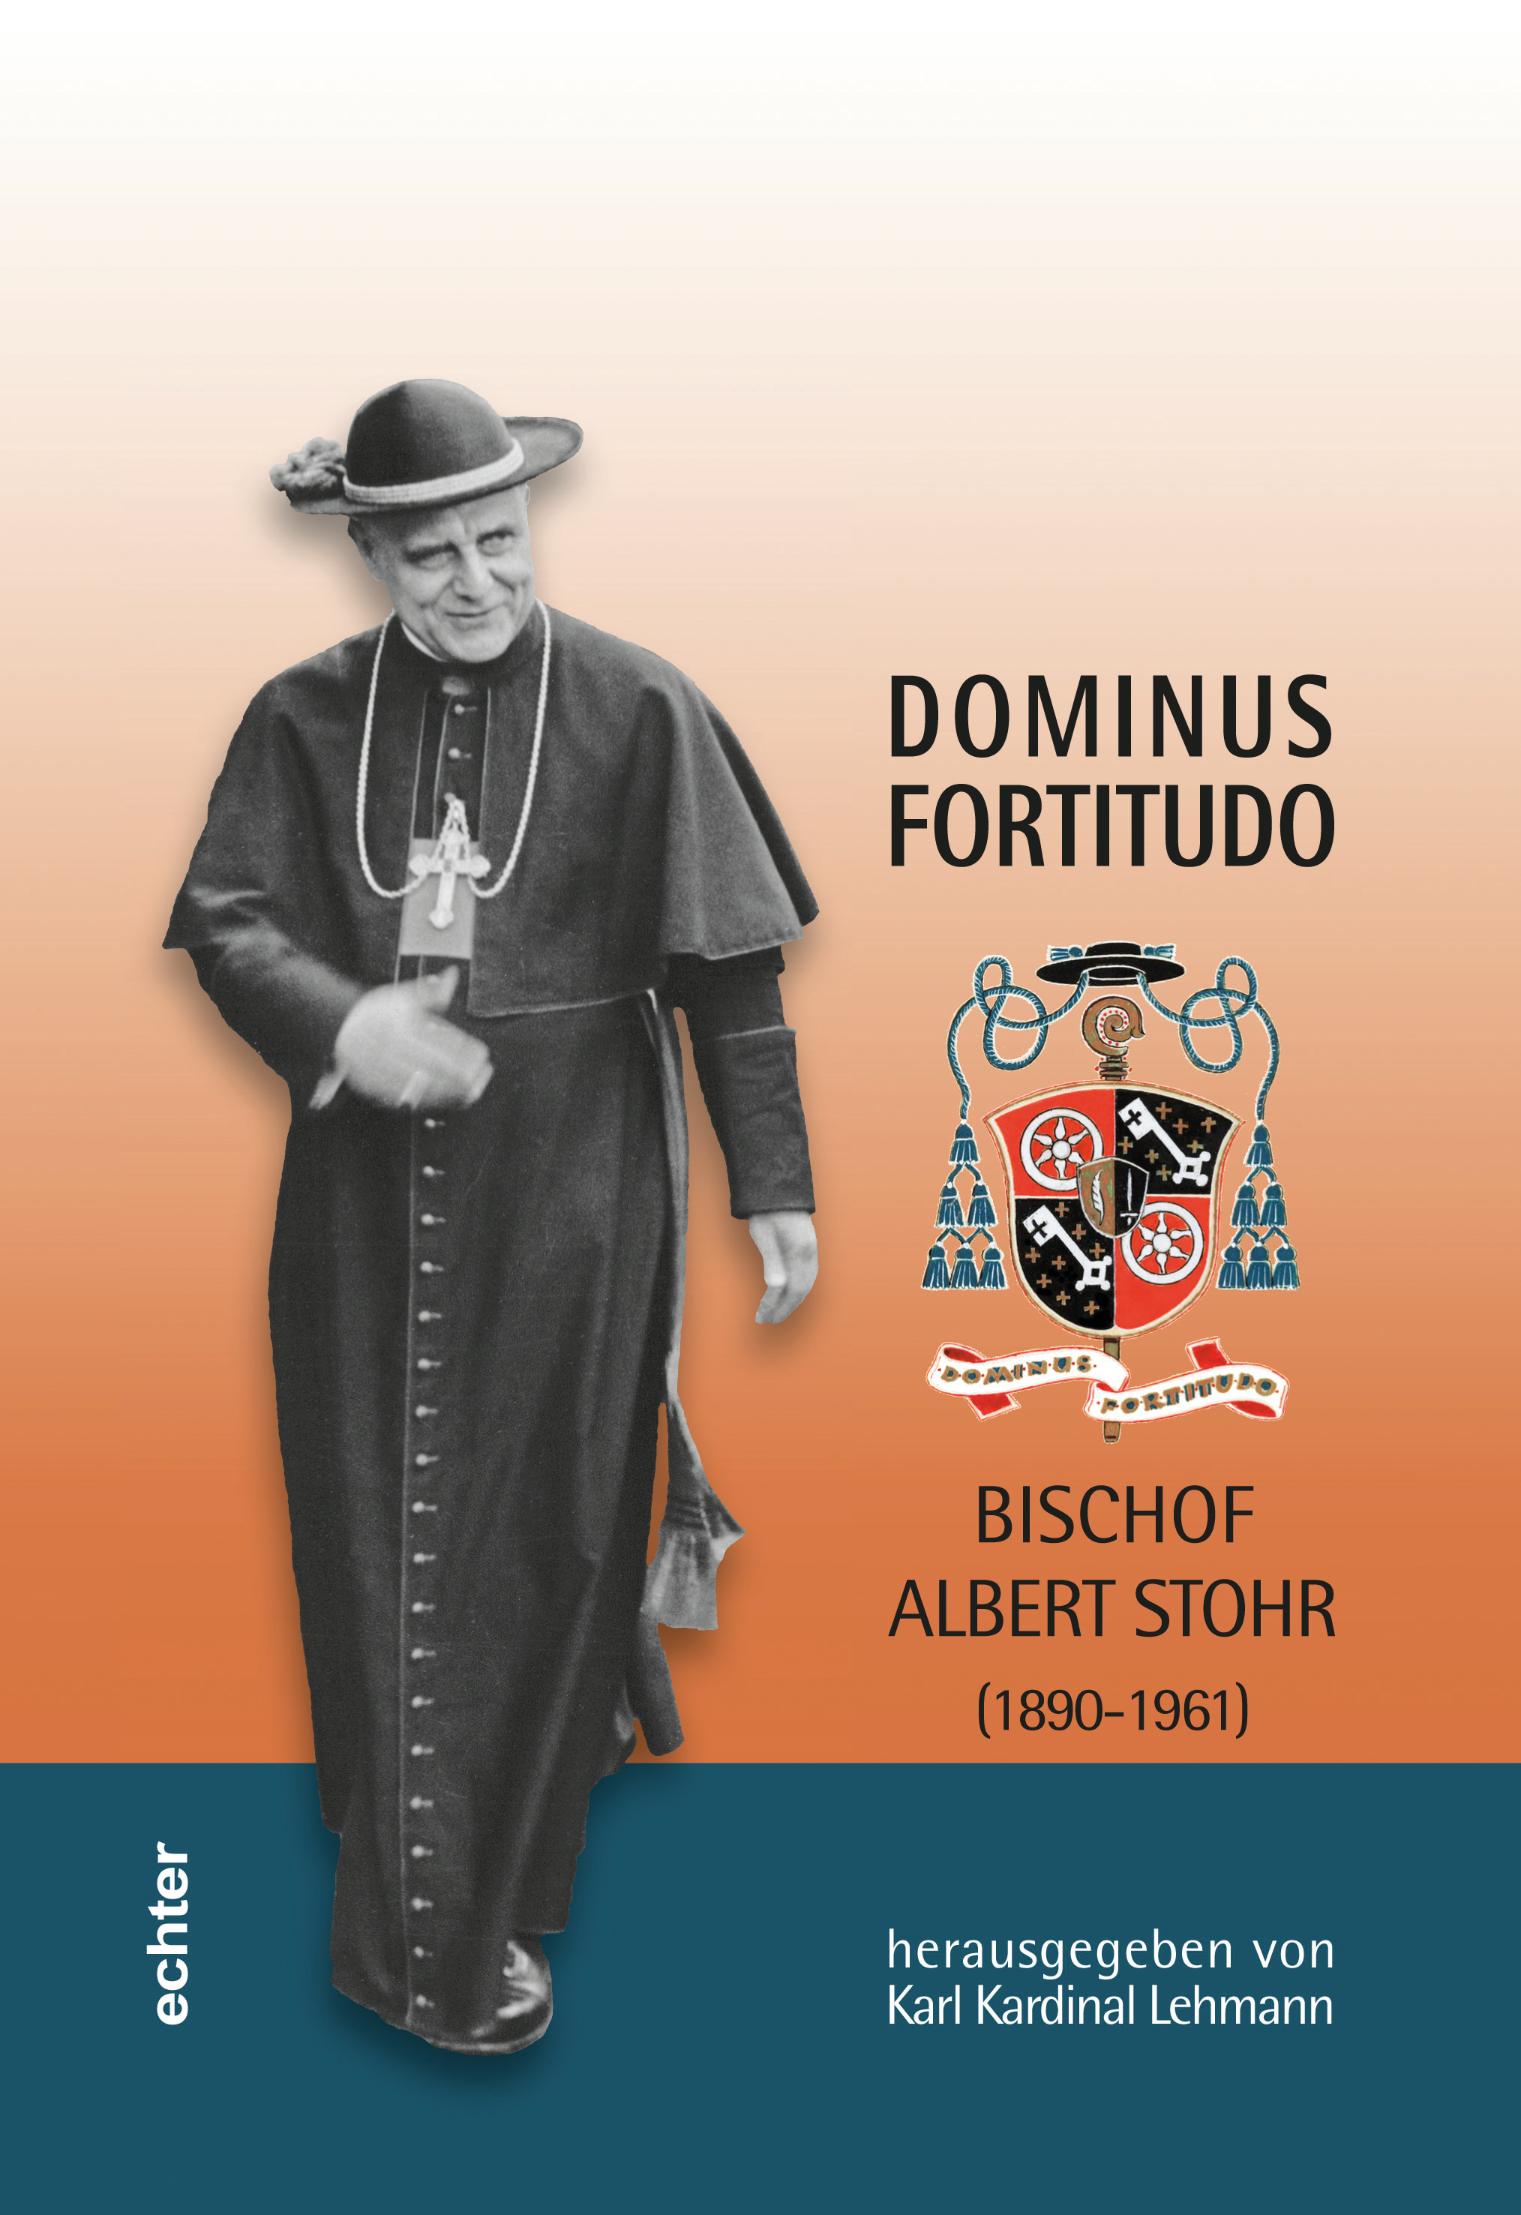 Dominus fortitudo